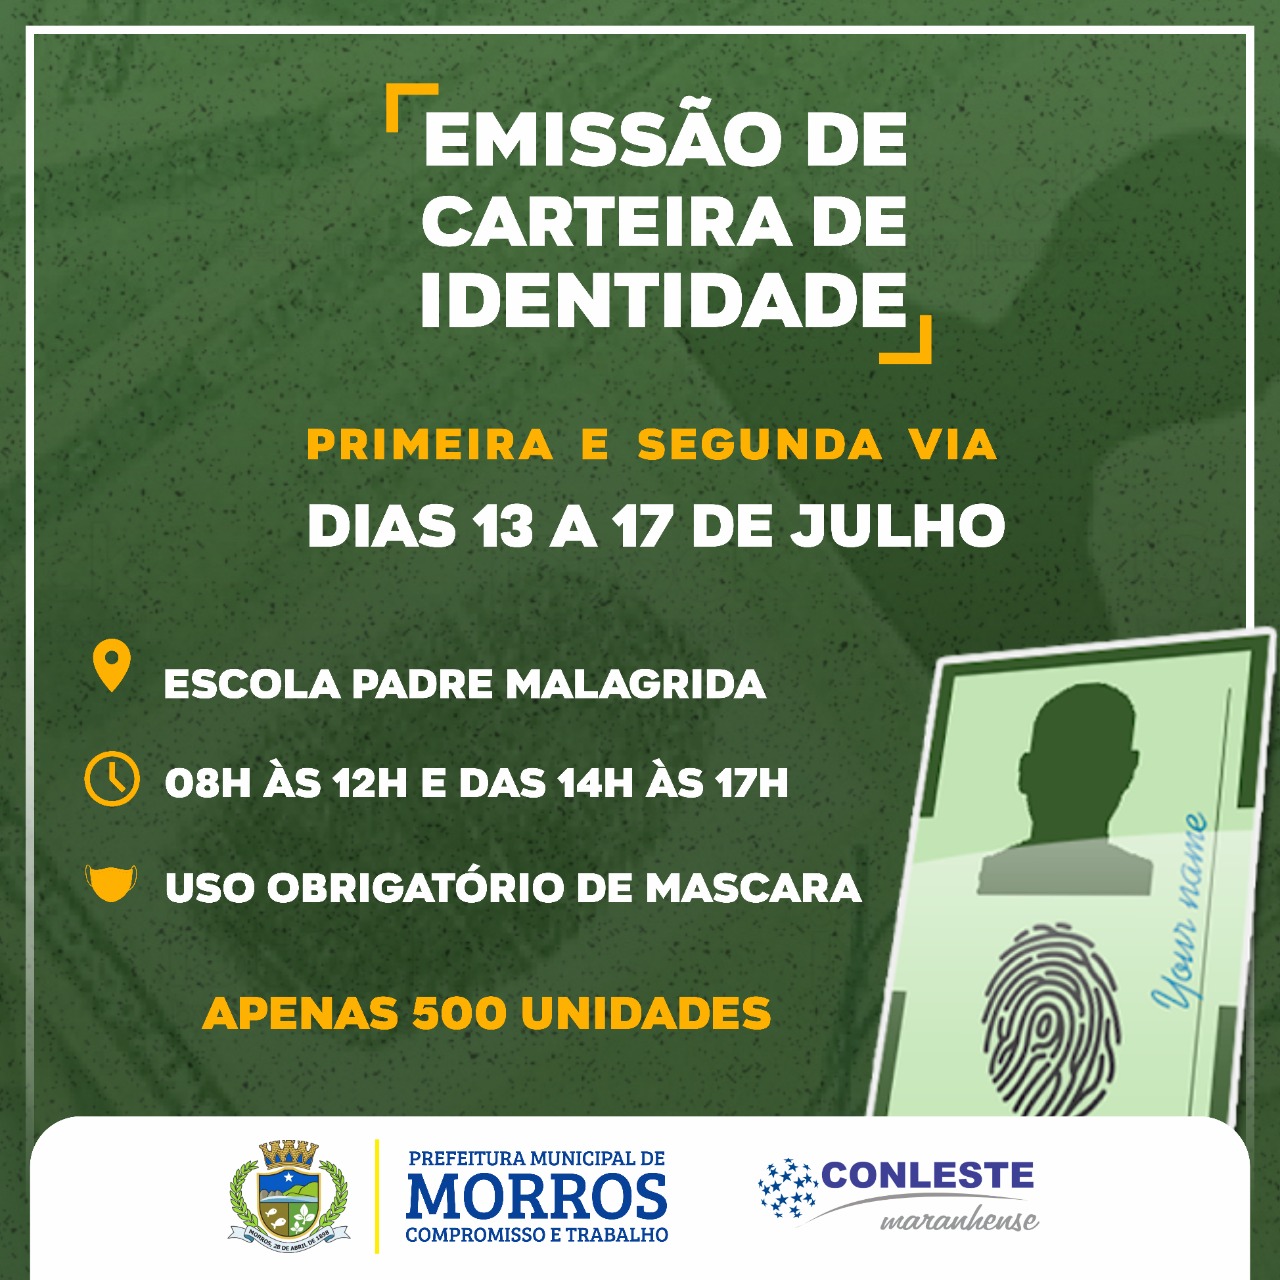 A Prefeitura Municipal de Morros, informa a toda população sobre a emissão gratuita de carteiras de identidade.